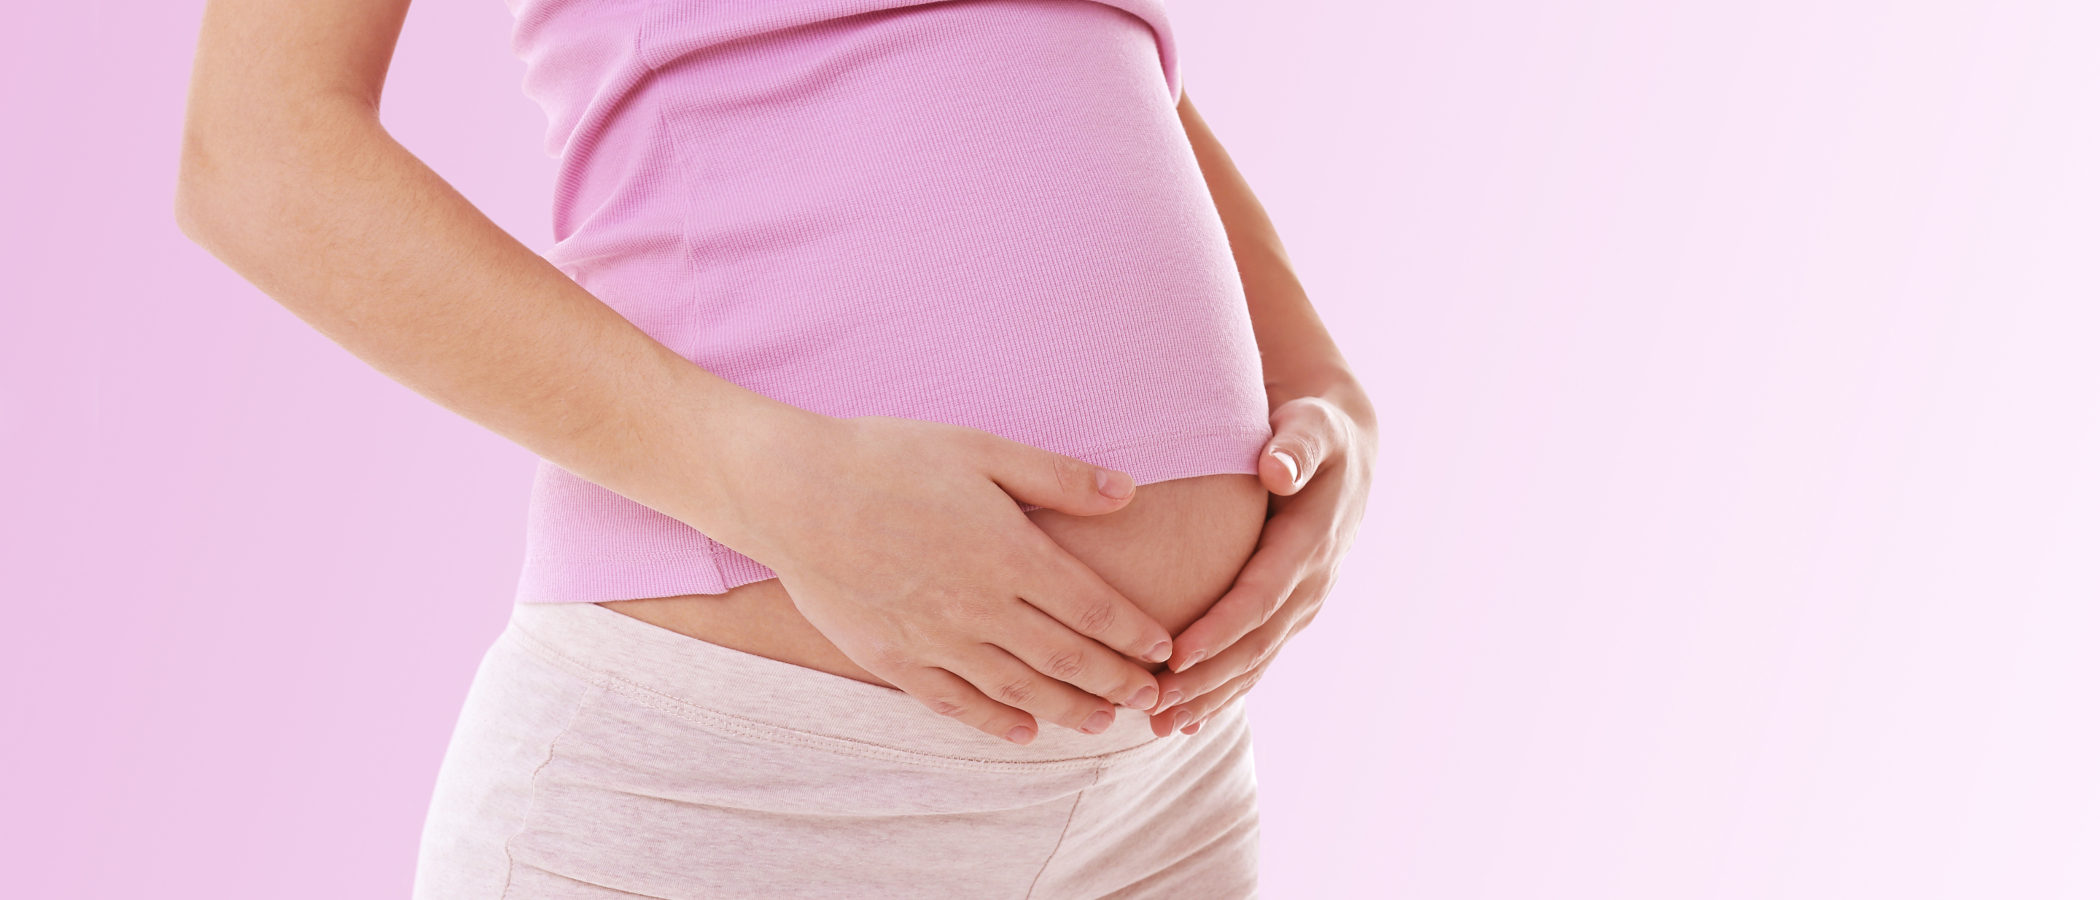 7 curiosidades sobre el embarazo que no conocías